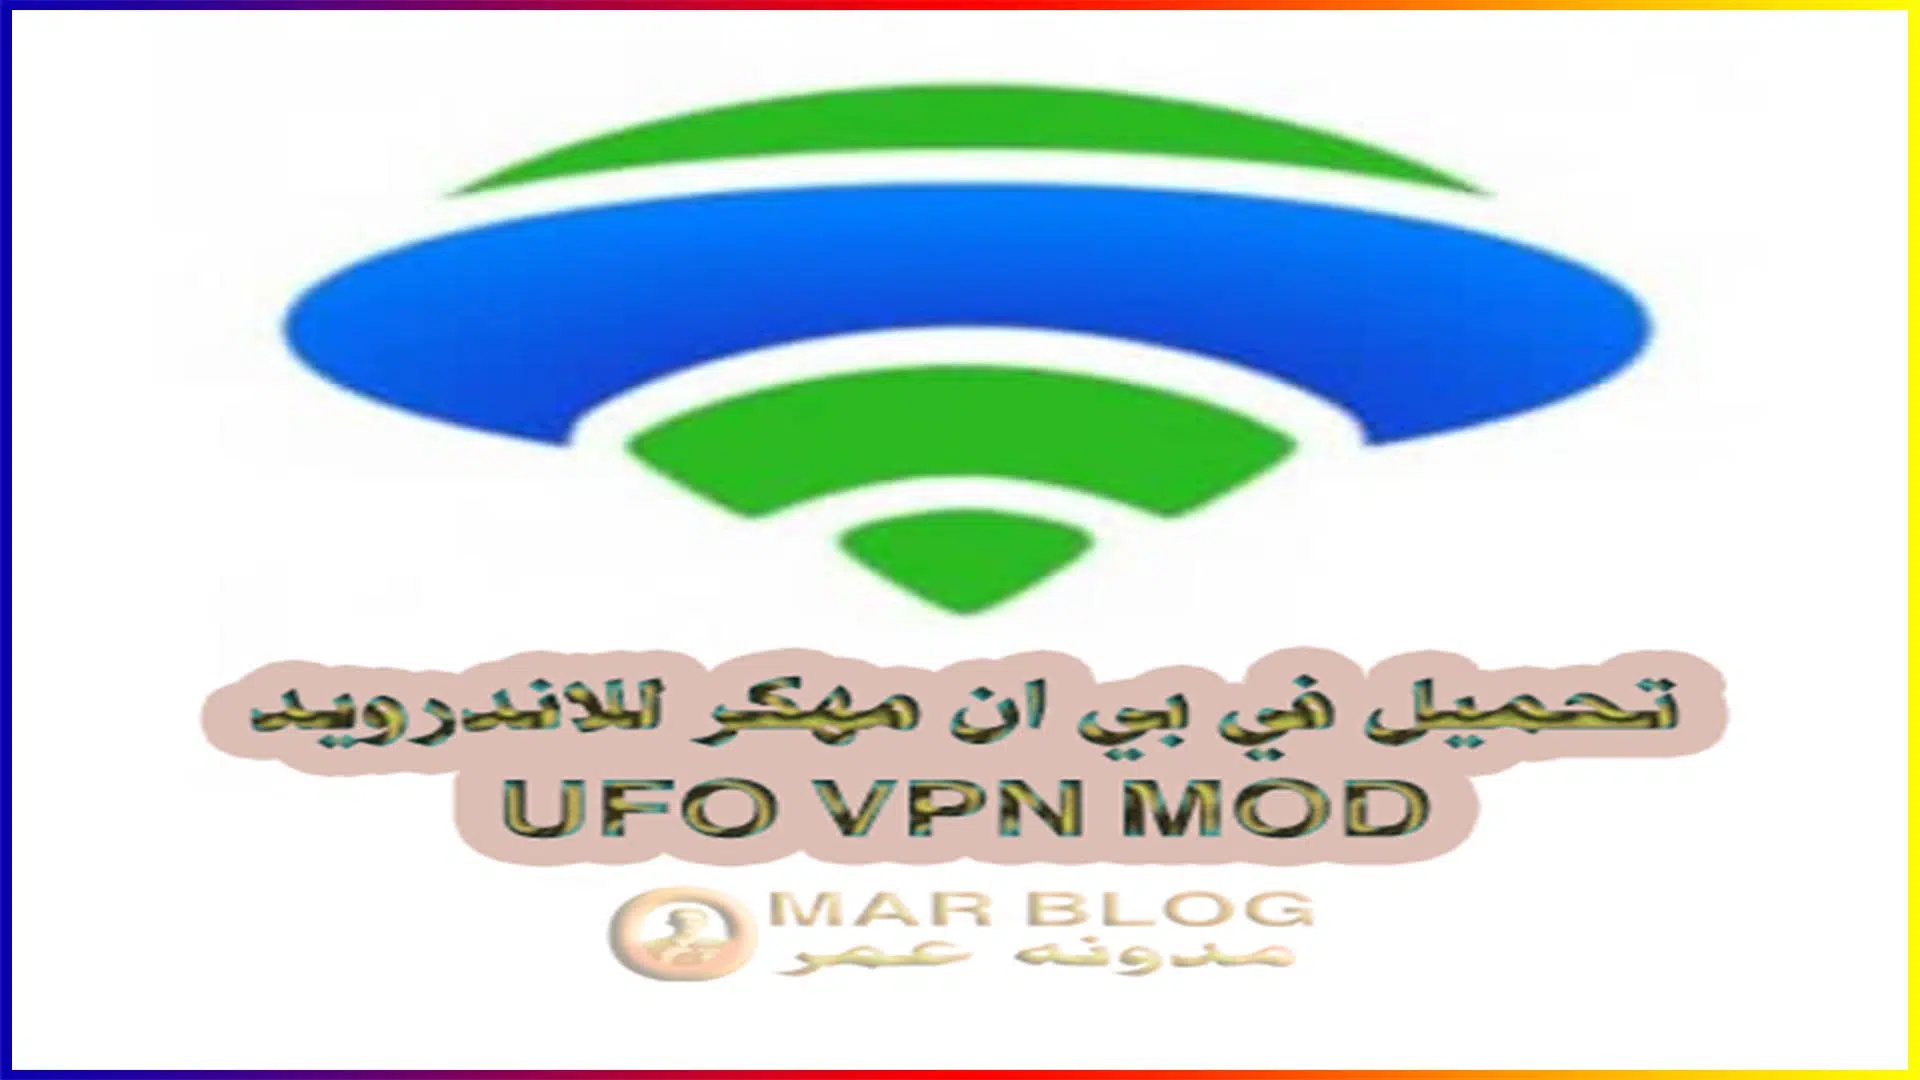 تحميل vpn مهكر للاندرويد 2021 (UFO VPN مهكر)